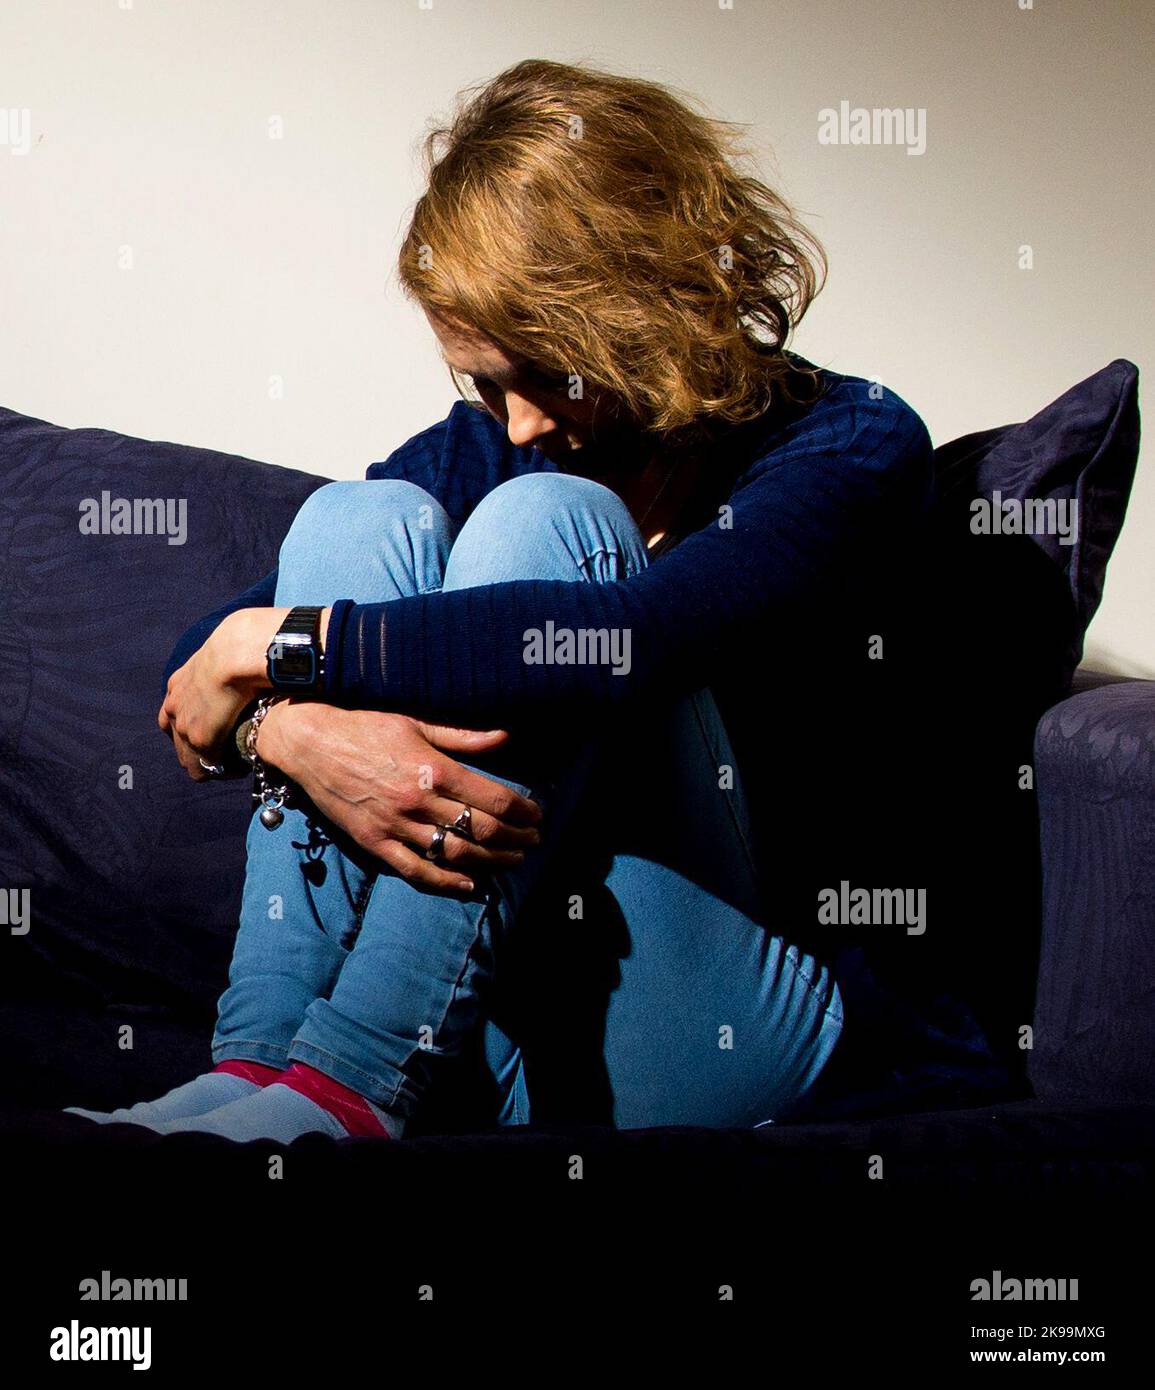 BILD POSED BY MODEL Datei-Foto vom 09/03/15 von einer Frau, die Anzeichen von Depressionen zeigt, da sich die Zahl der Menschen in Schottland, die mit einem „Sozialschutz“ leben, in den letzten zehn Jahren mehr als verdoppelt hat, was Forderungen nach einer Gesetzesreform aufwarf. Stockfoto